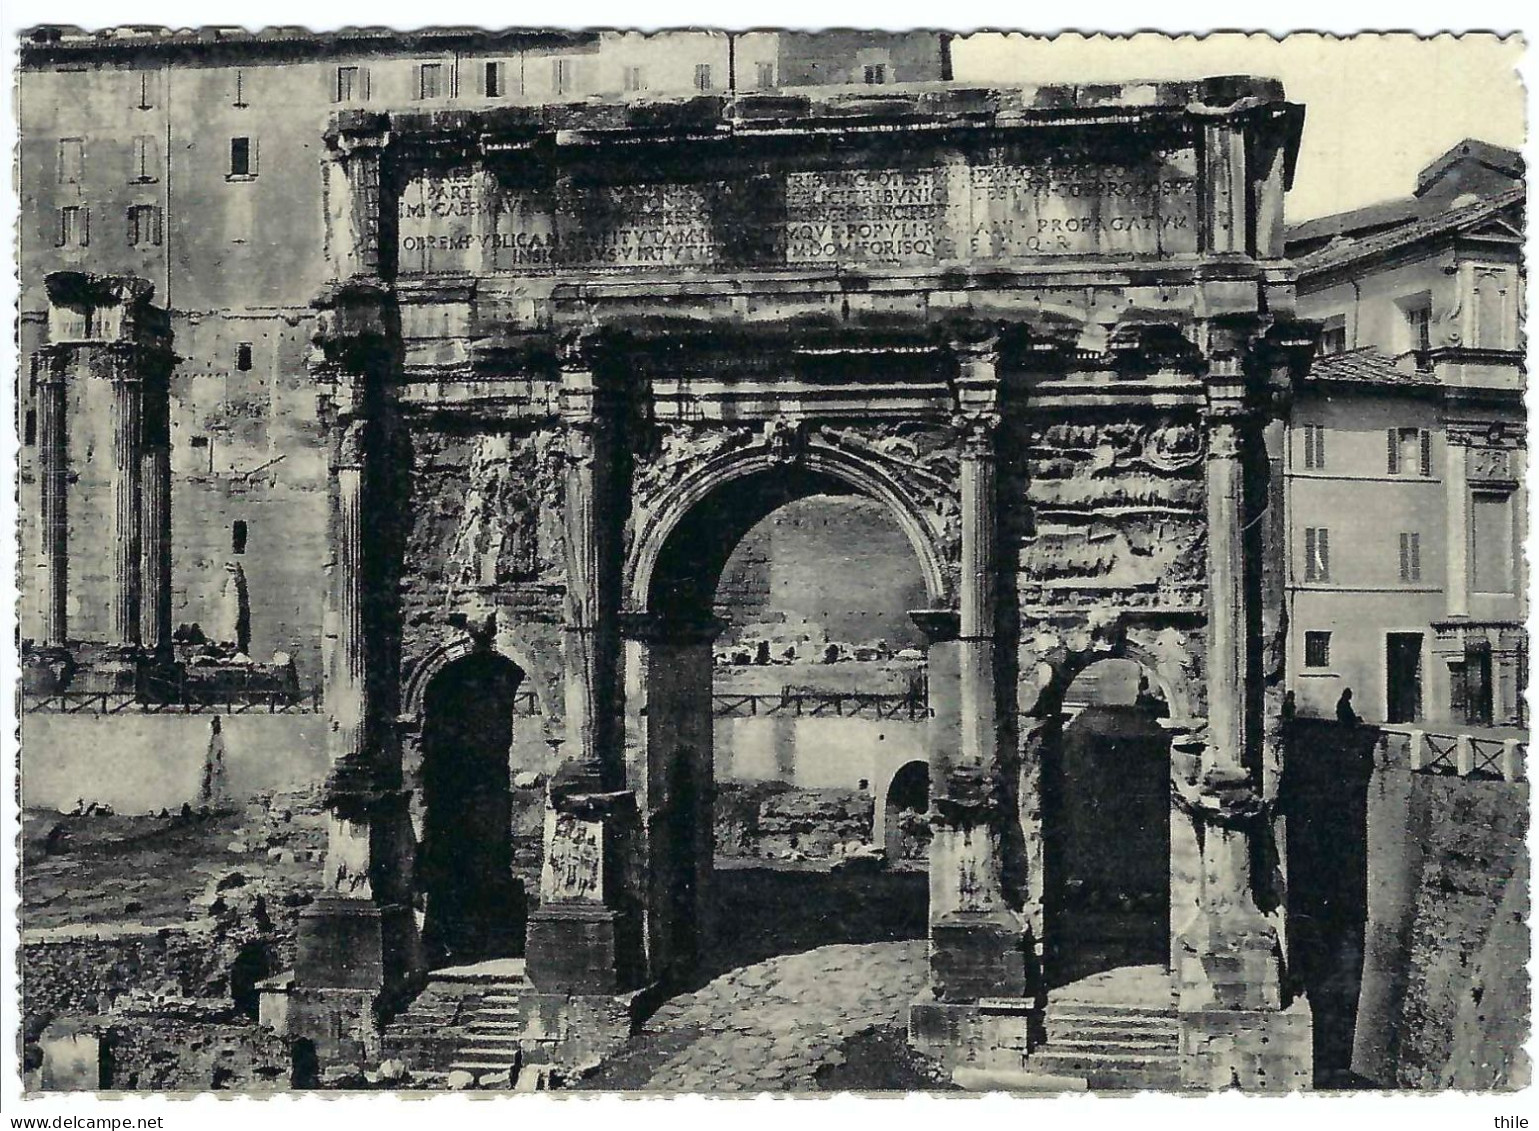 ROMA - Arco Di Settimio Severo - Andere Monumente & Gebäude